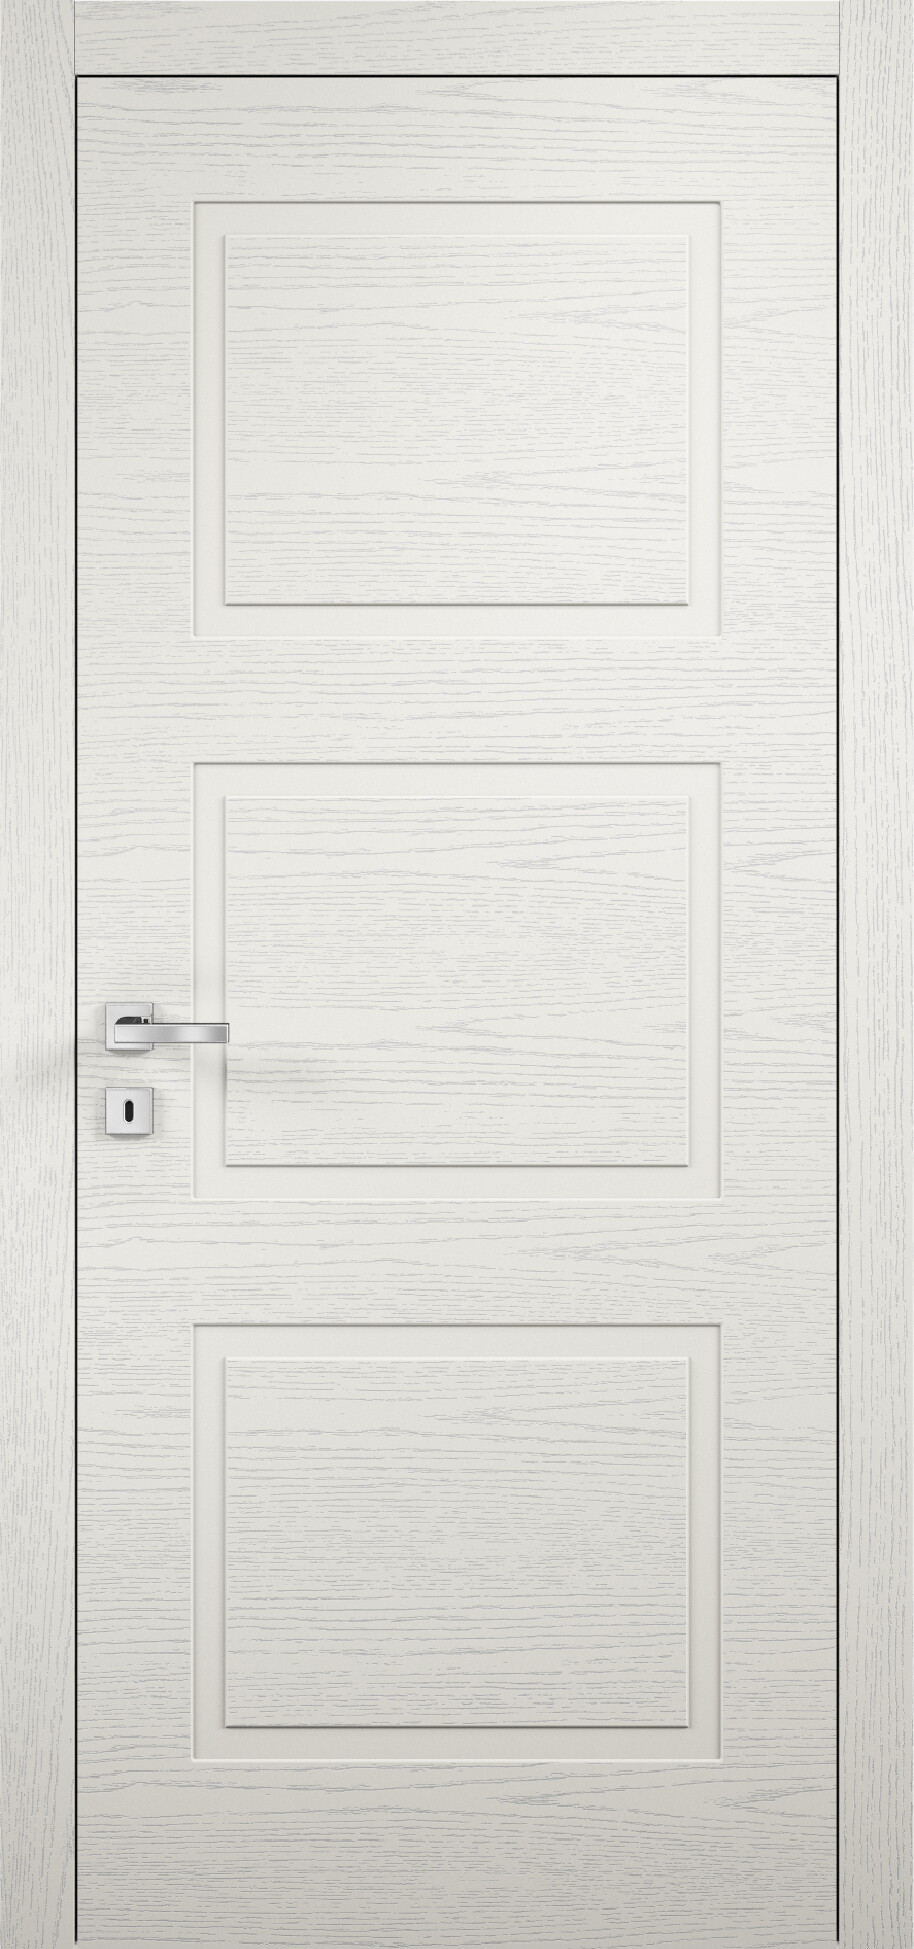 межкомнатные двери эмалированная межкомнатная дверь glamour 105 эмаль слоновая кость